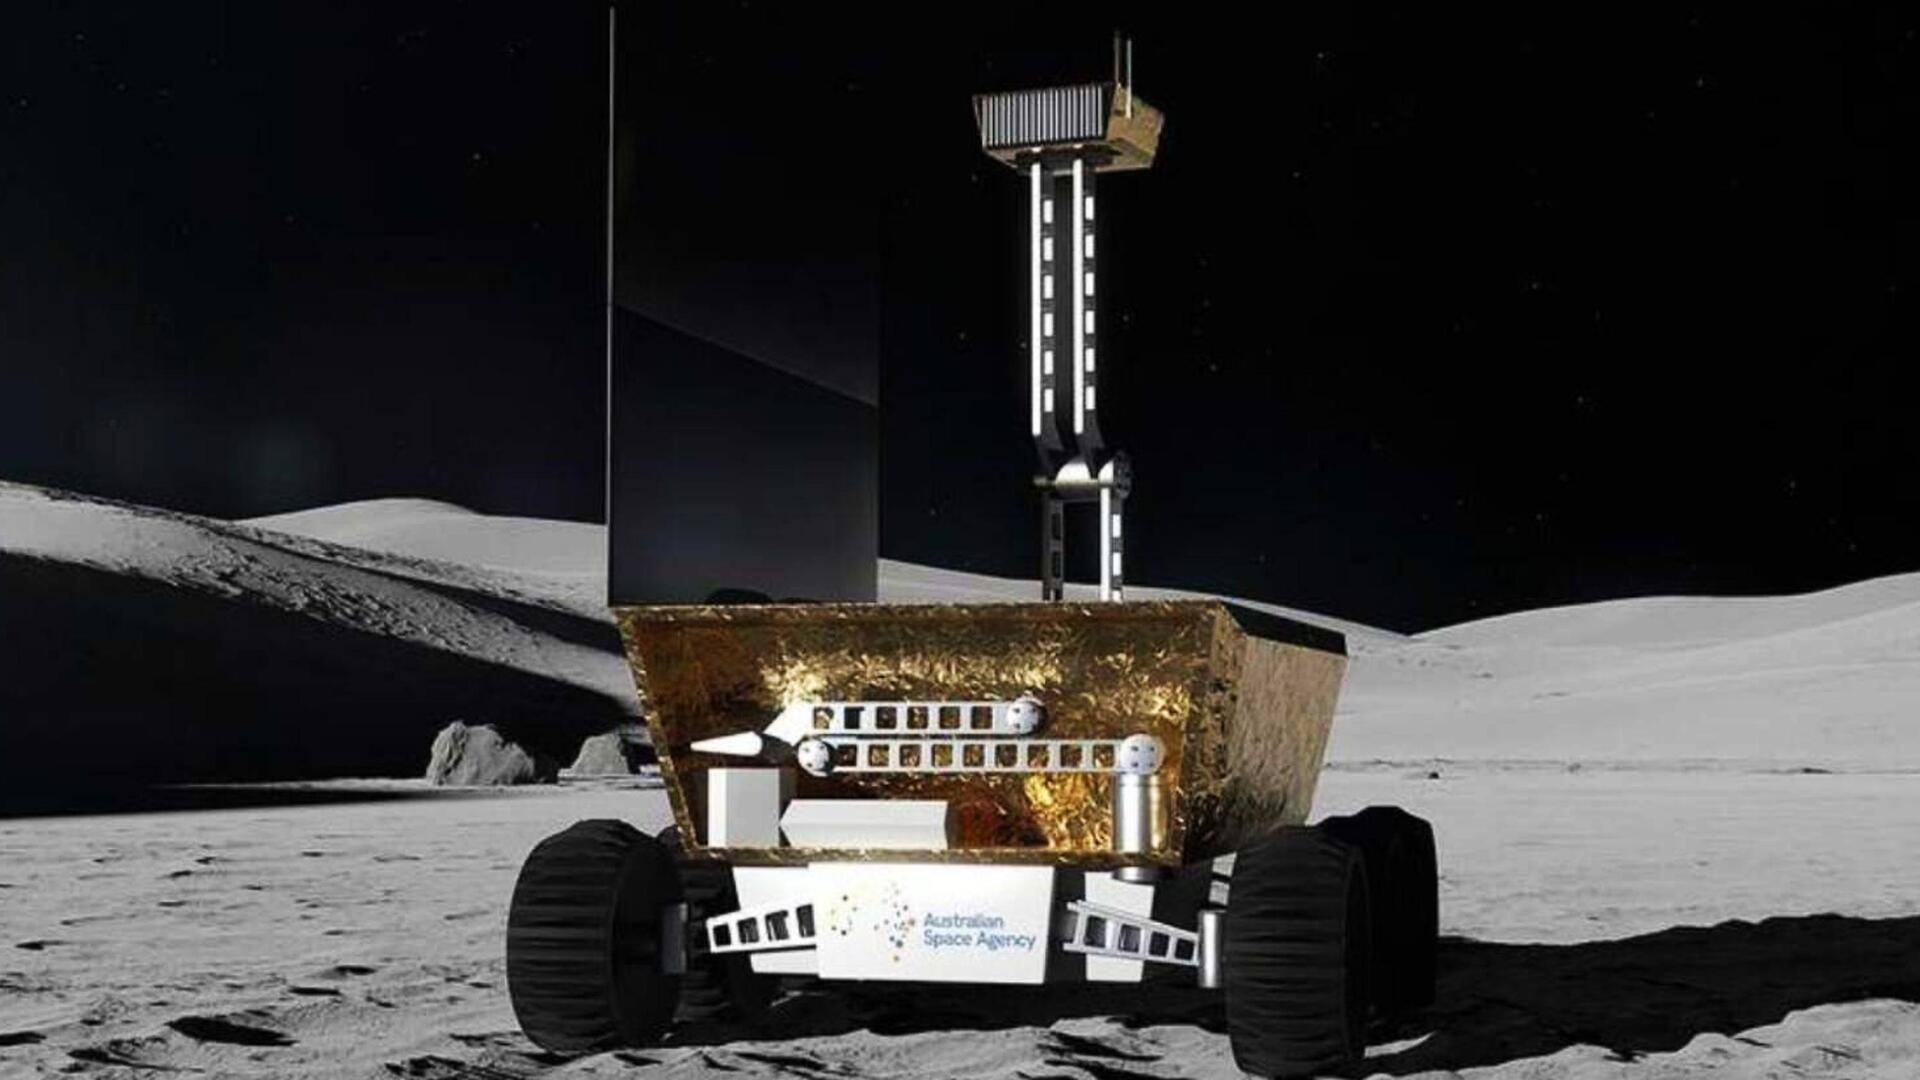 ऑस्ट्रेलिया का पहला चांद रोवर करेगा ये काम, अभी तय नहीं हुआ नाम